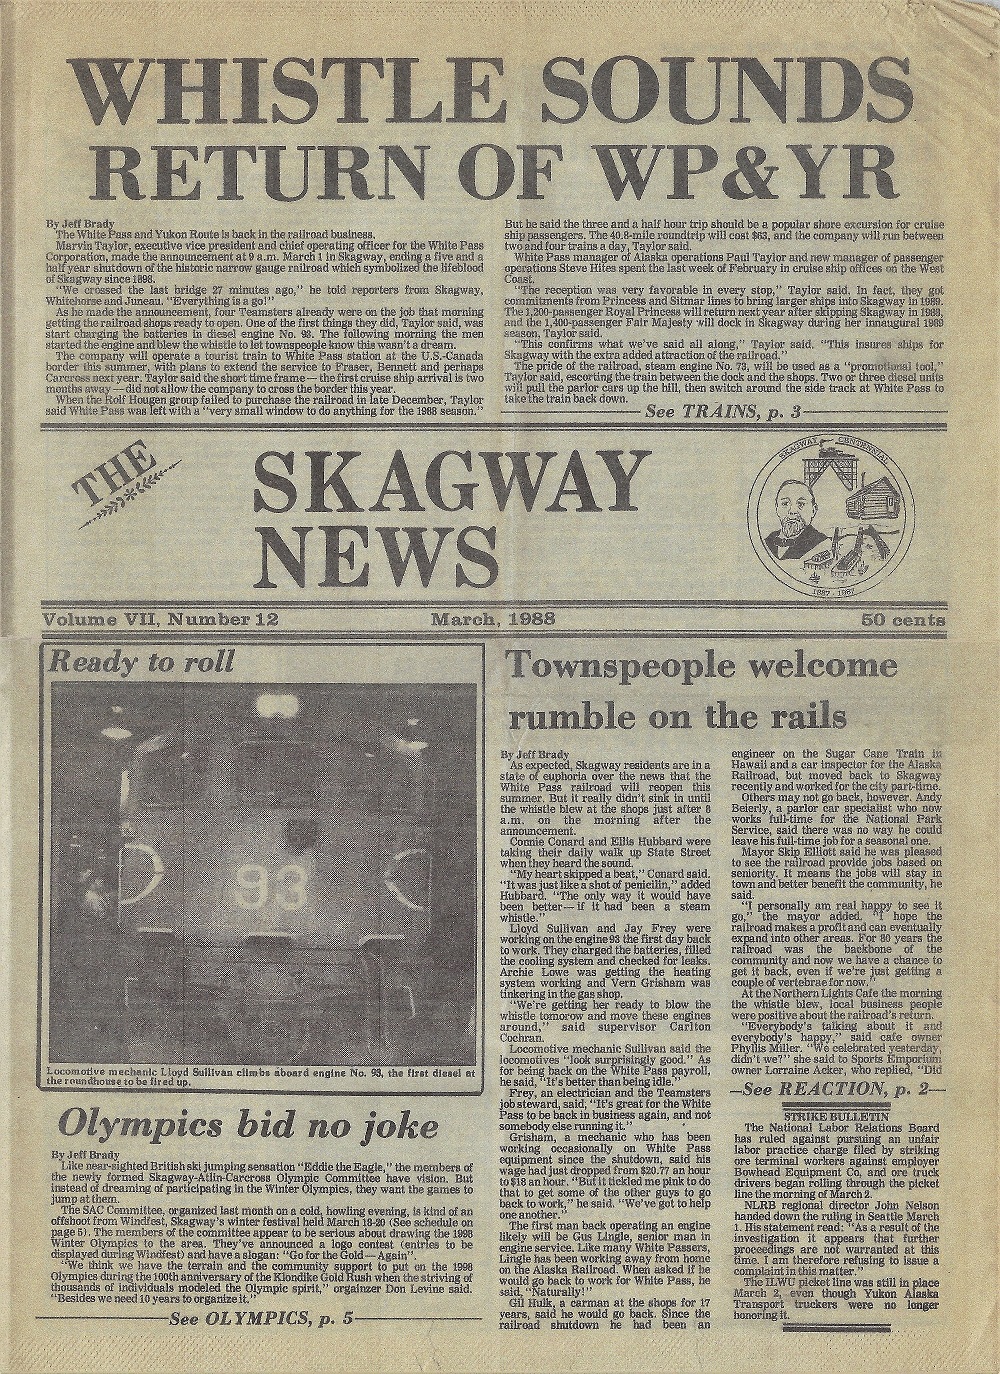 Skagway News (March 1988).jpg